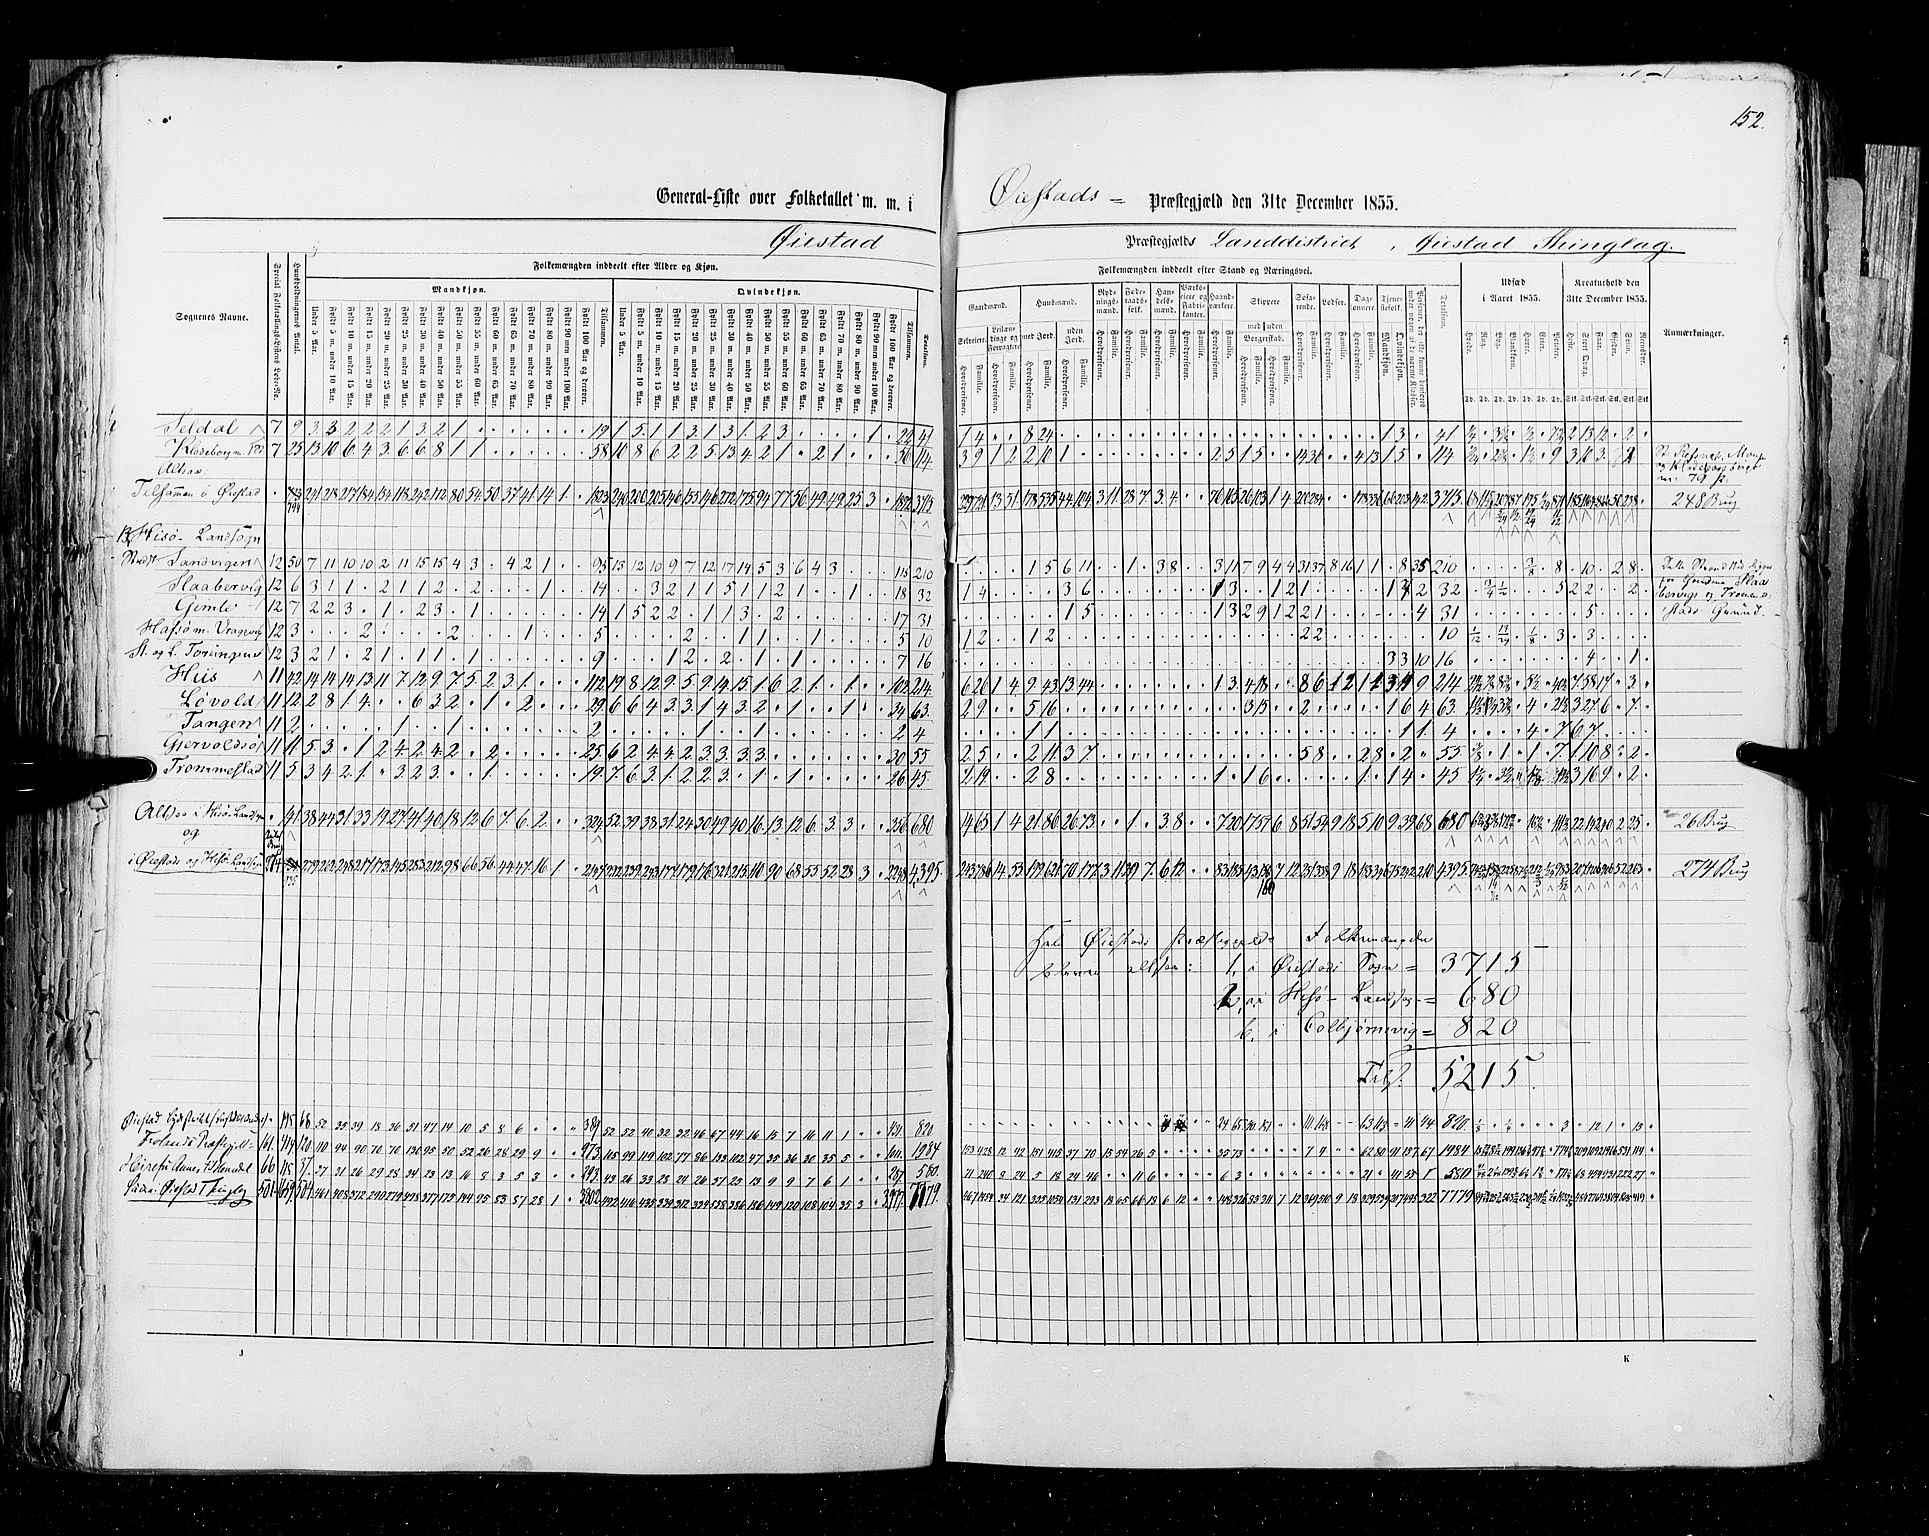 RA, Census 1855, vol. 3: Bratsberg amt, Nedenes amt og Lister og Mandal amt, 1855, p. 152